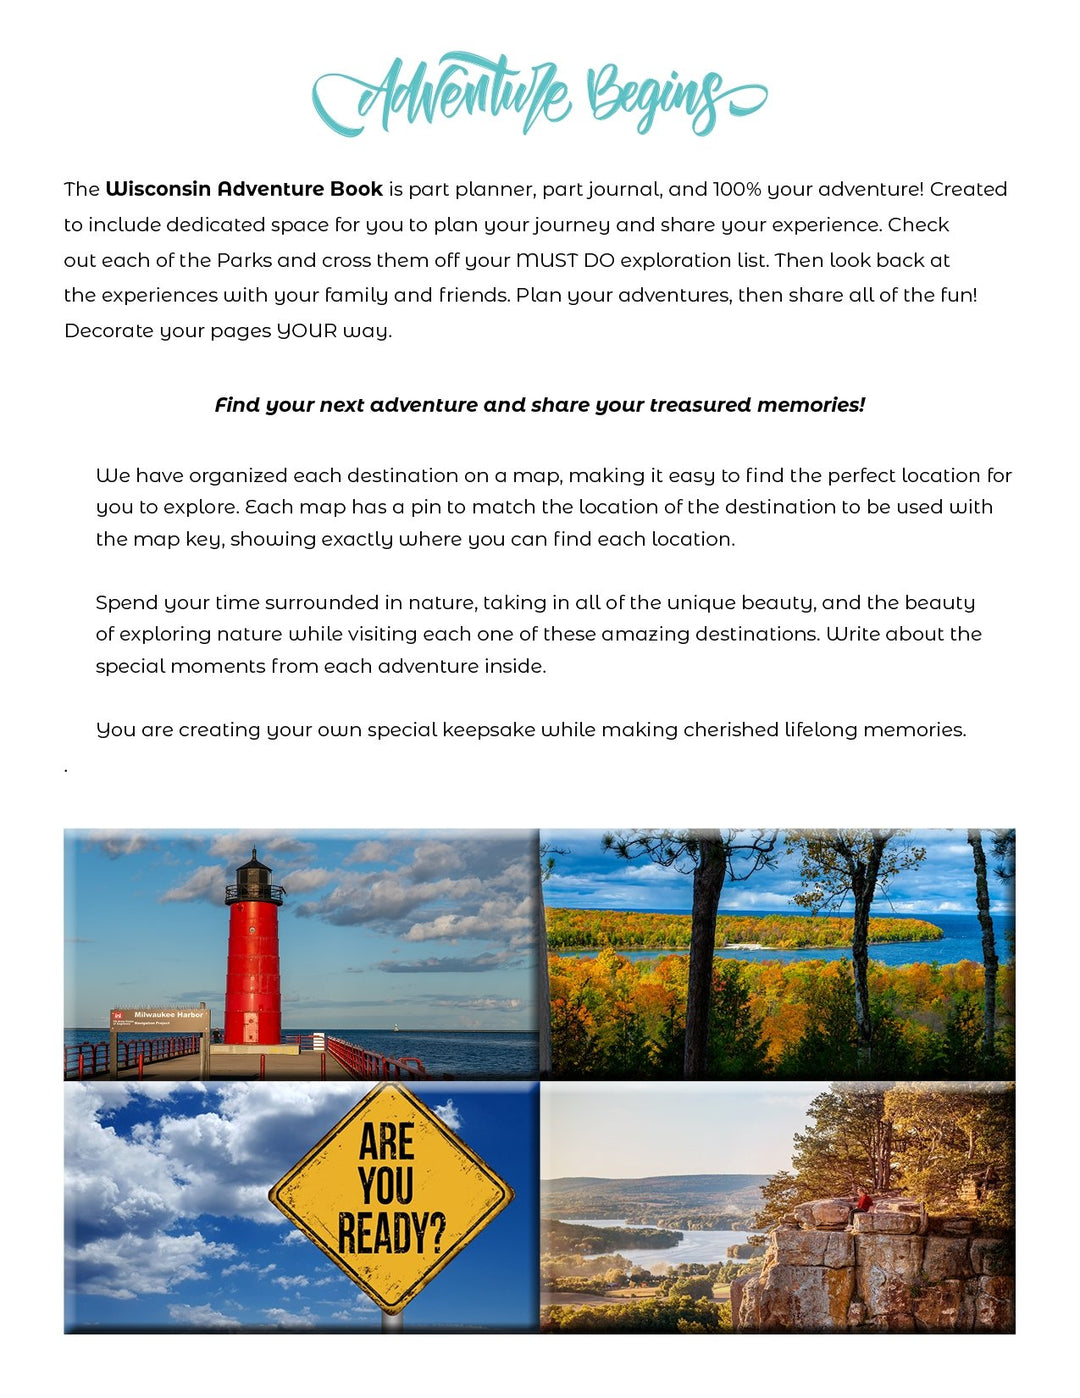 New 2023 - Wisconsin Adventure Book - My Nature Book Adventures